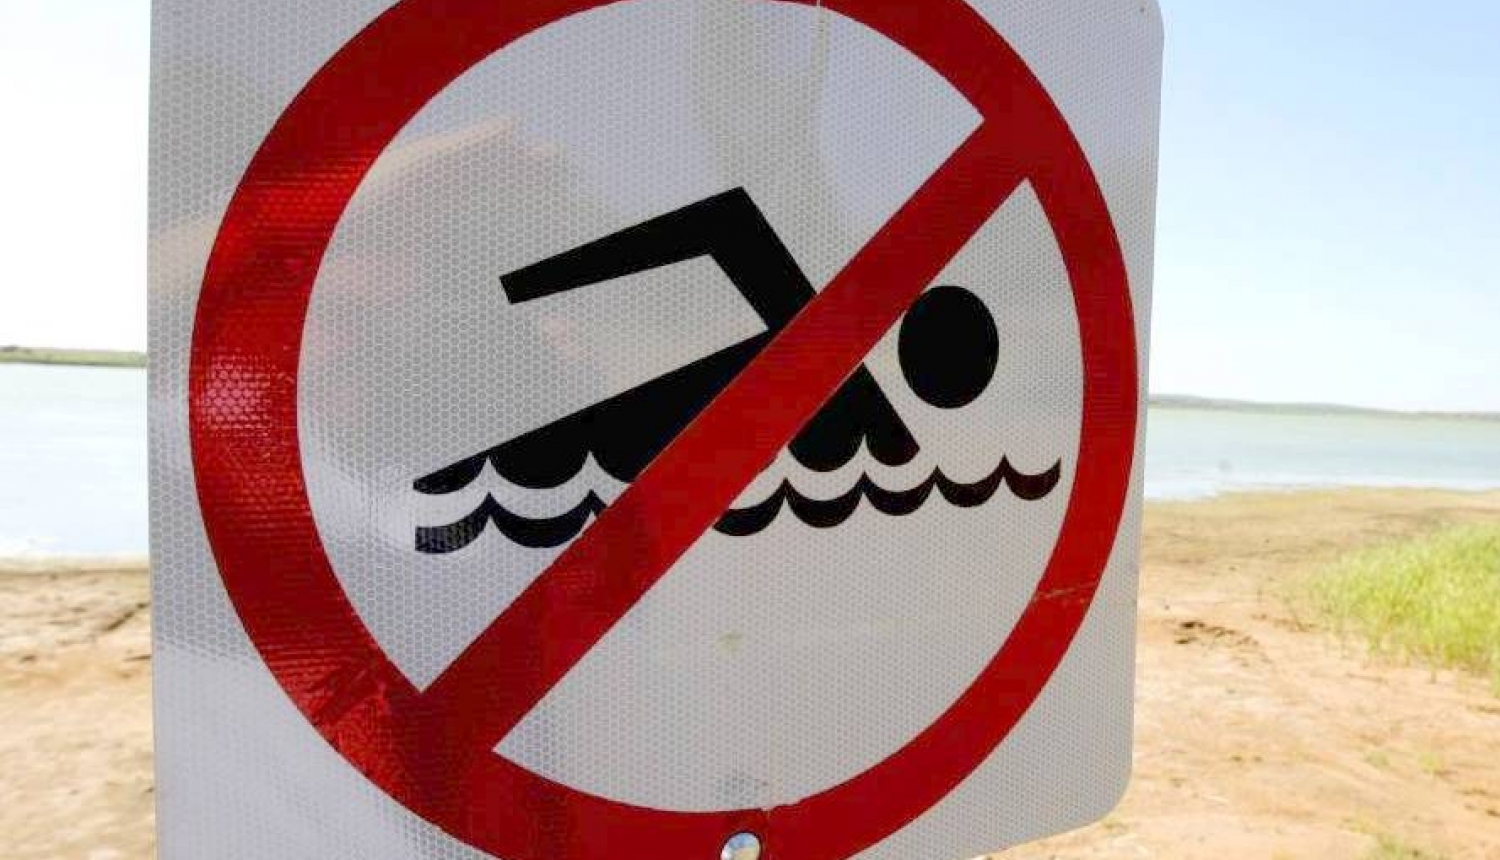 Piesārņojuma dēļ aizliegts peldēties Madlienas pagastā baseinā pie skolas